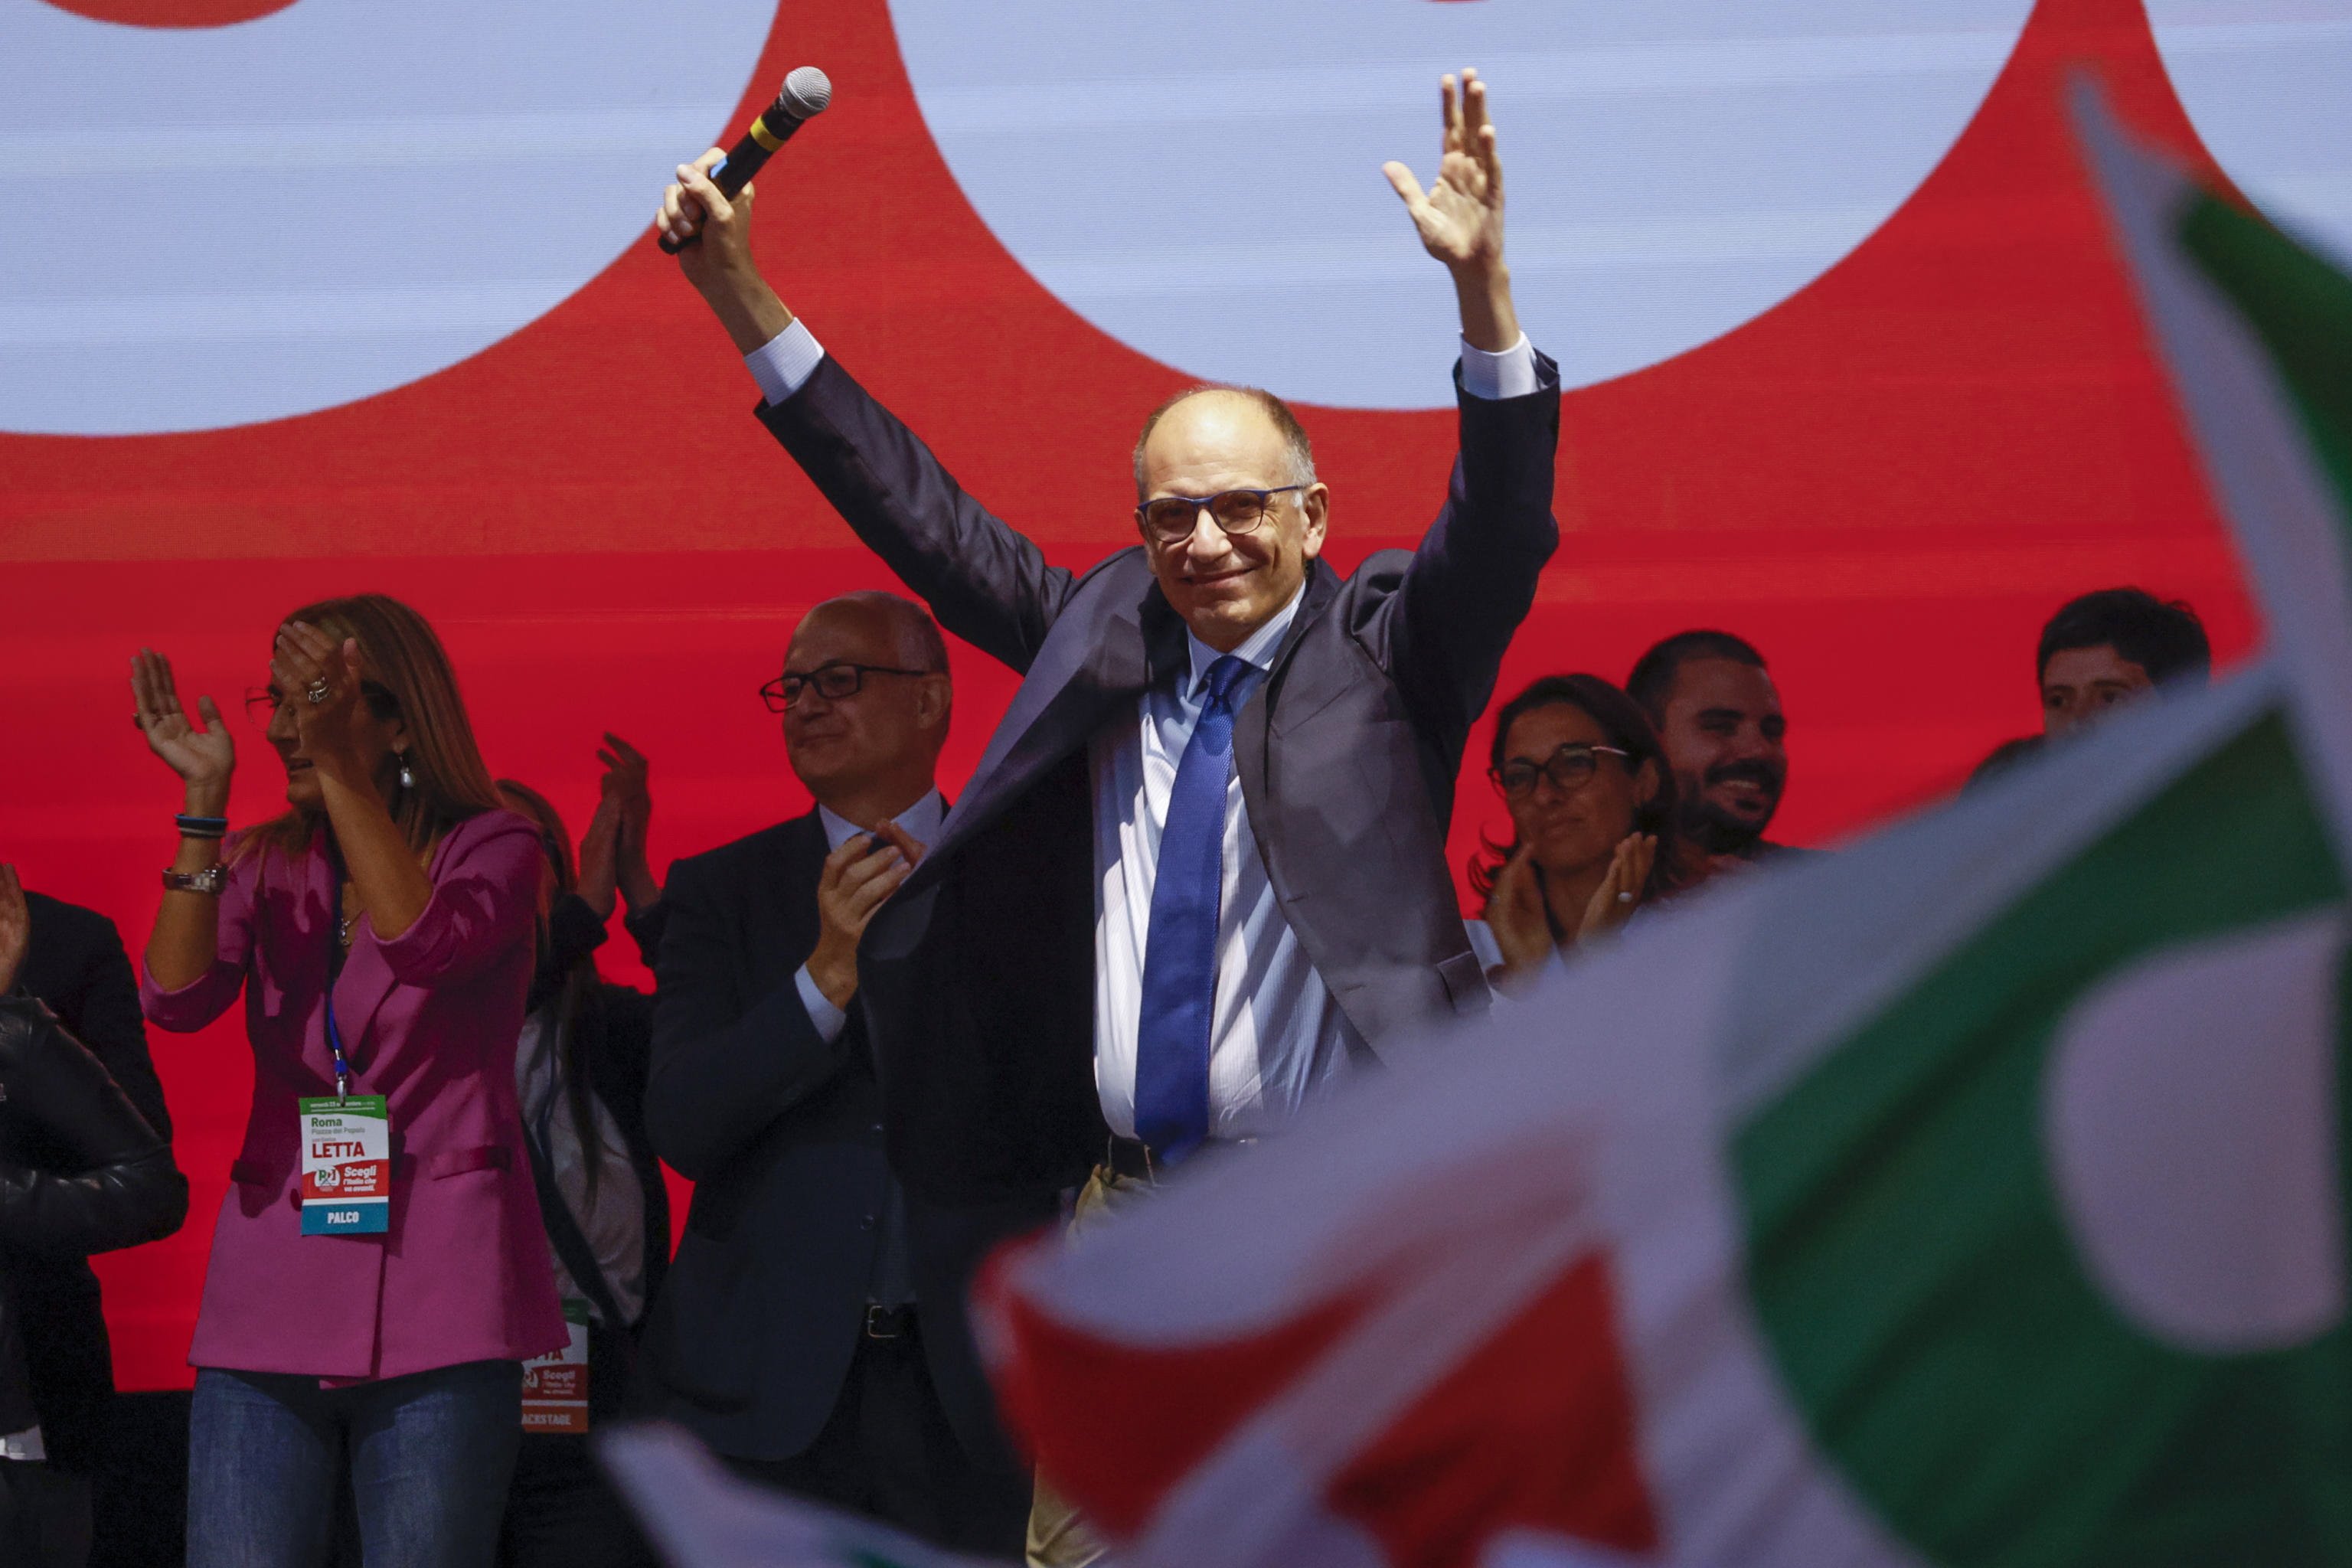 Enrico Letta, el candidato de izquierdas con el objetivo de frenar la ultraderecha en las elecciones de Italia